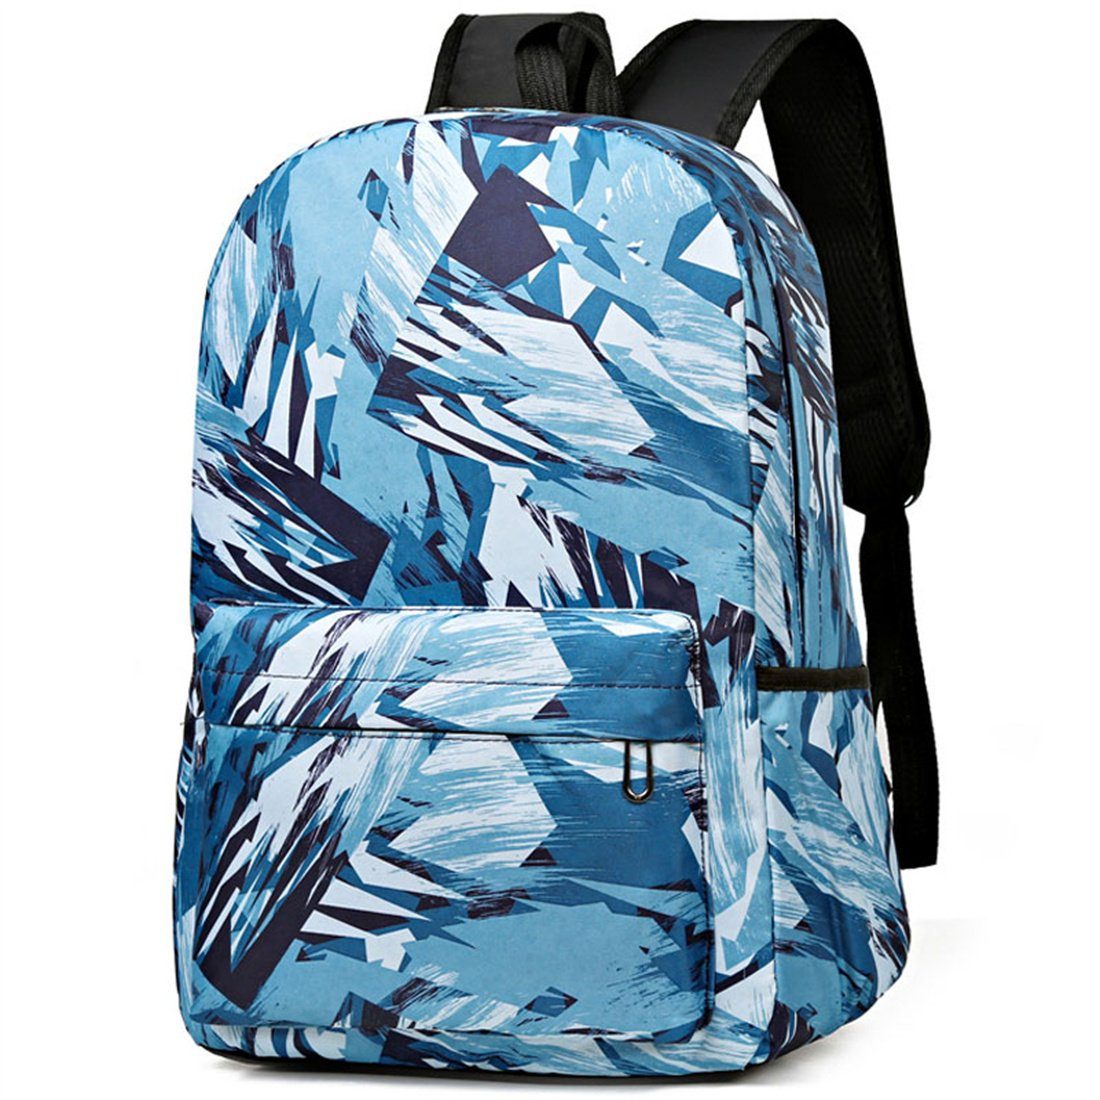 DÖRÖY Schulranzen Große Kapazität Mode Rucksäcke lässig Schultasche blau für Studenten,Schule